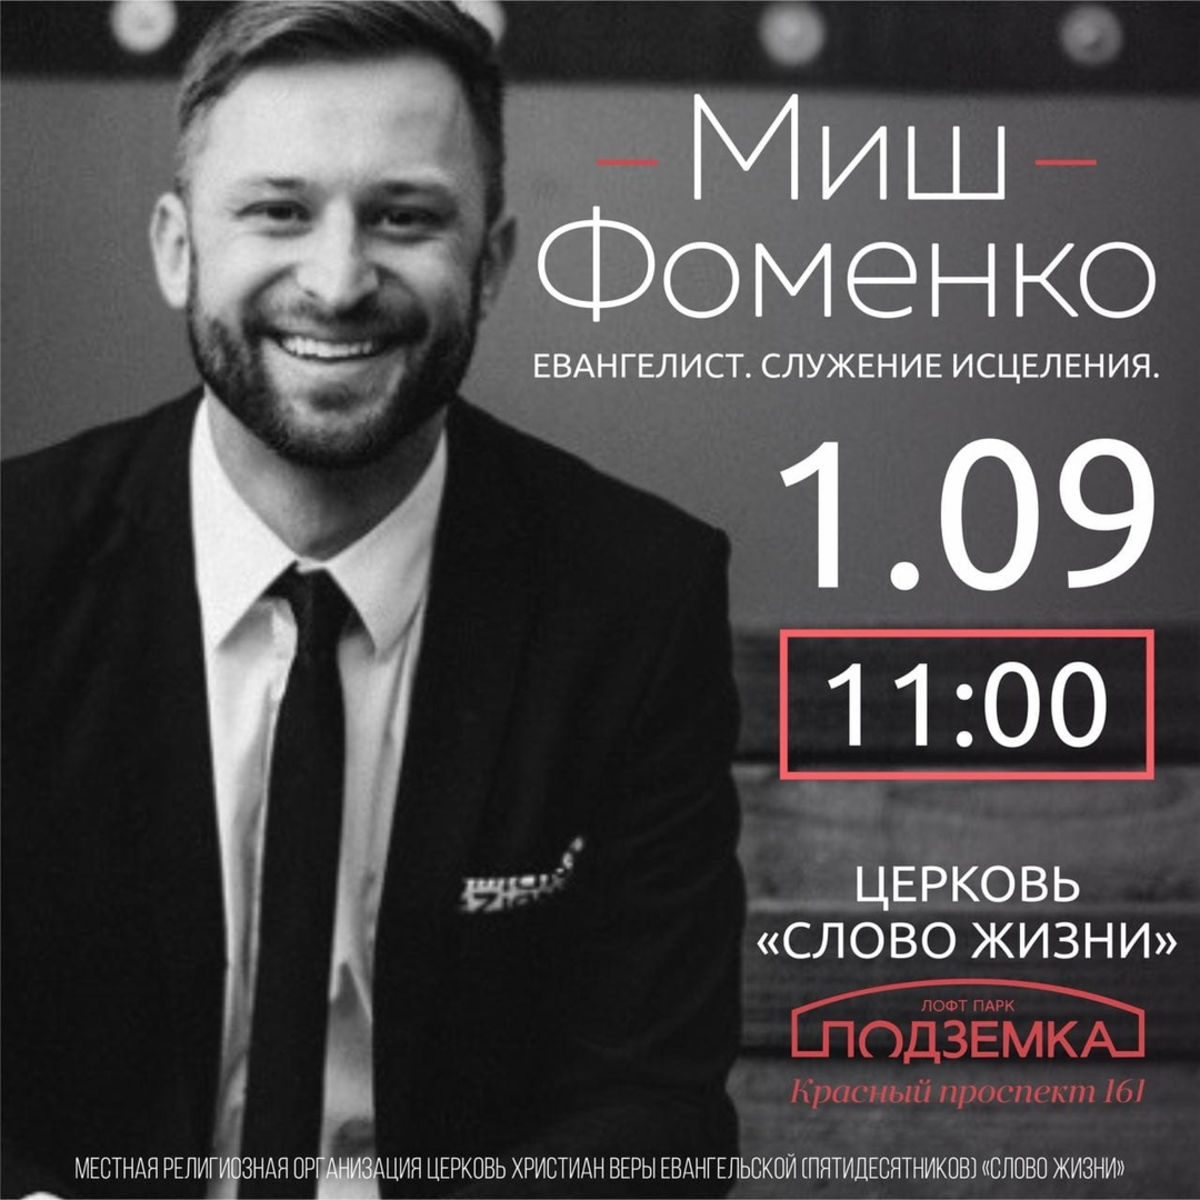 Проповедник Миш Фоменко (США) проведет служения исцеления в новосибирской церкви «Слово жизни»